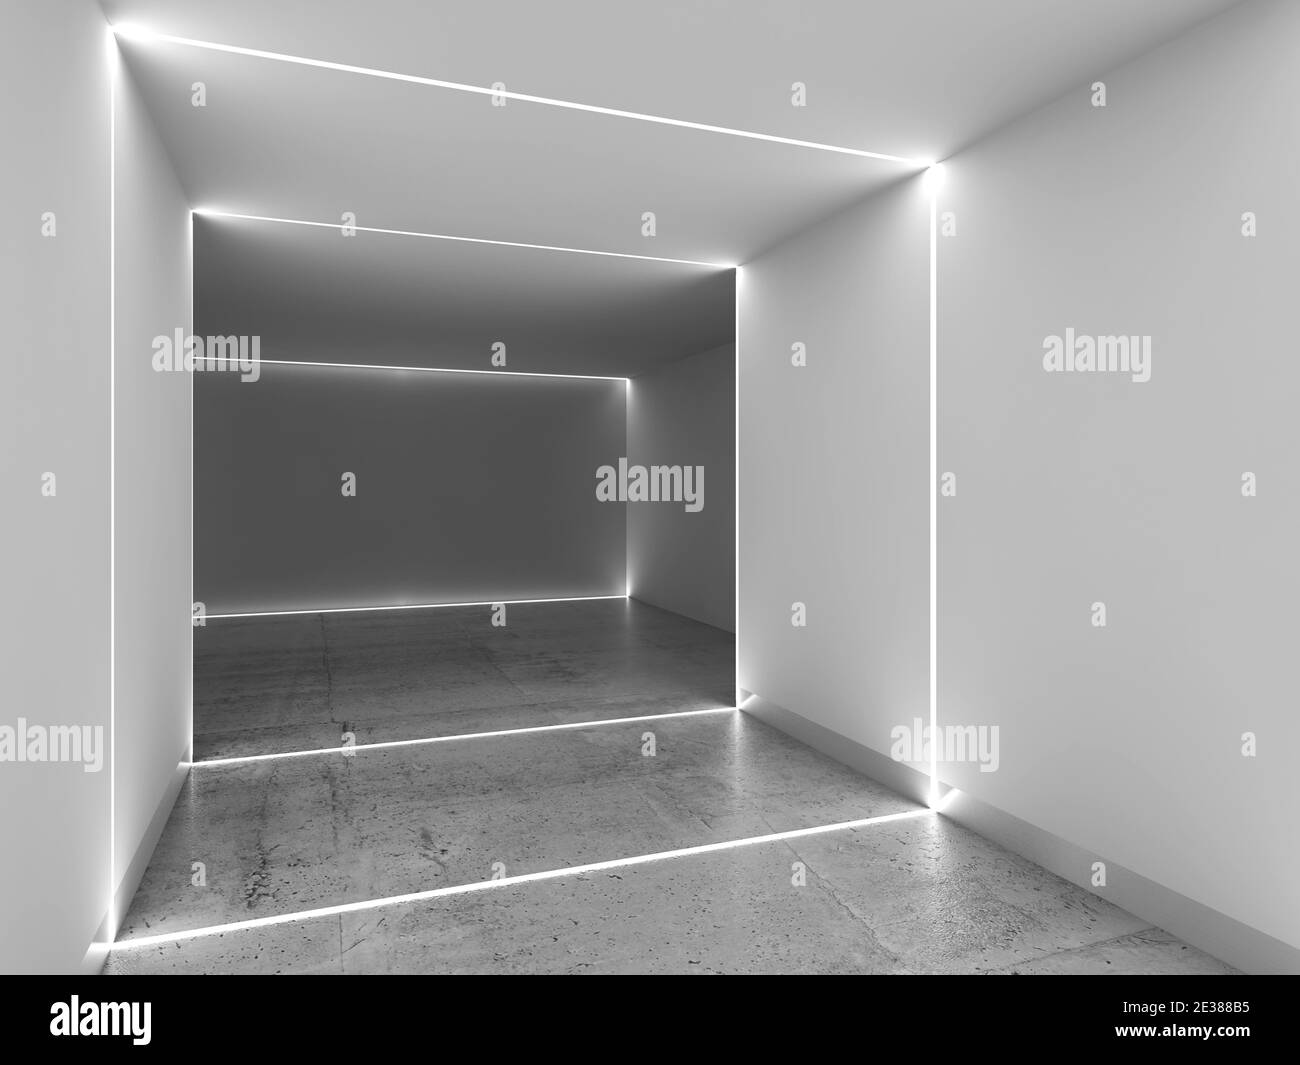 Strisce led immagini e fotografie stock ad alta risoluzione - Alamy